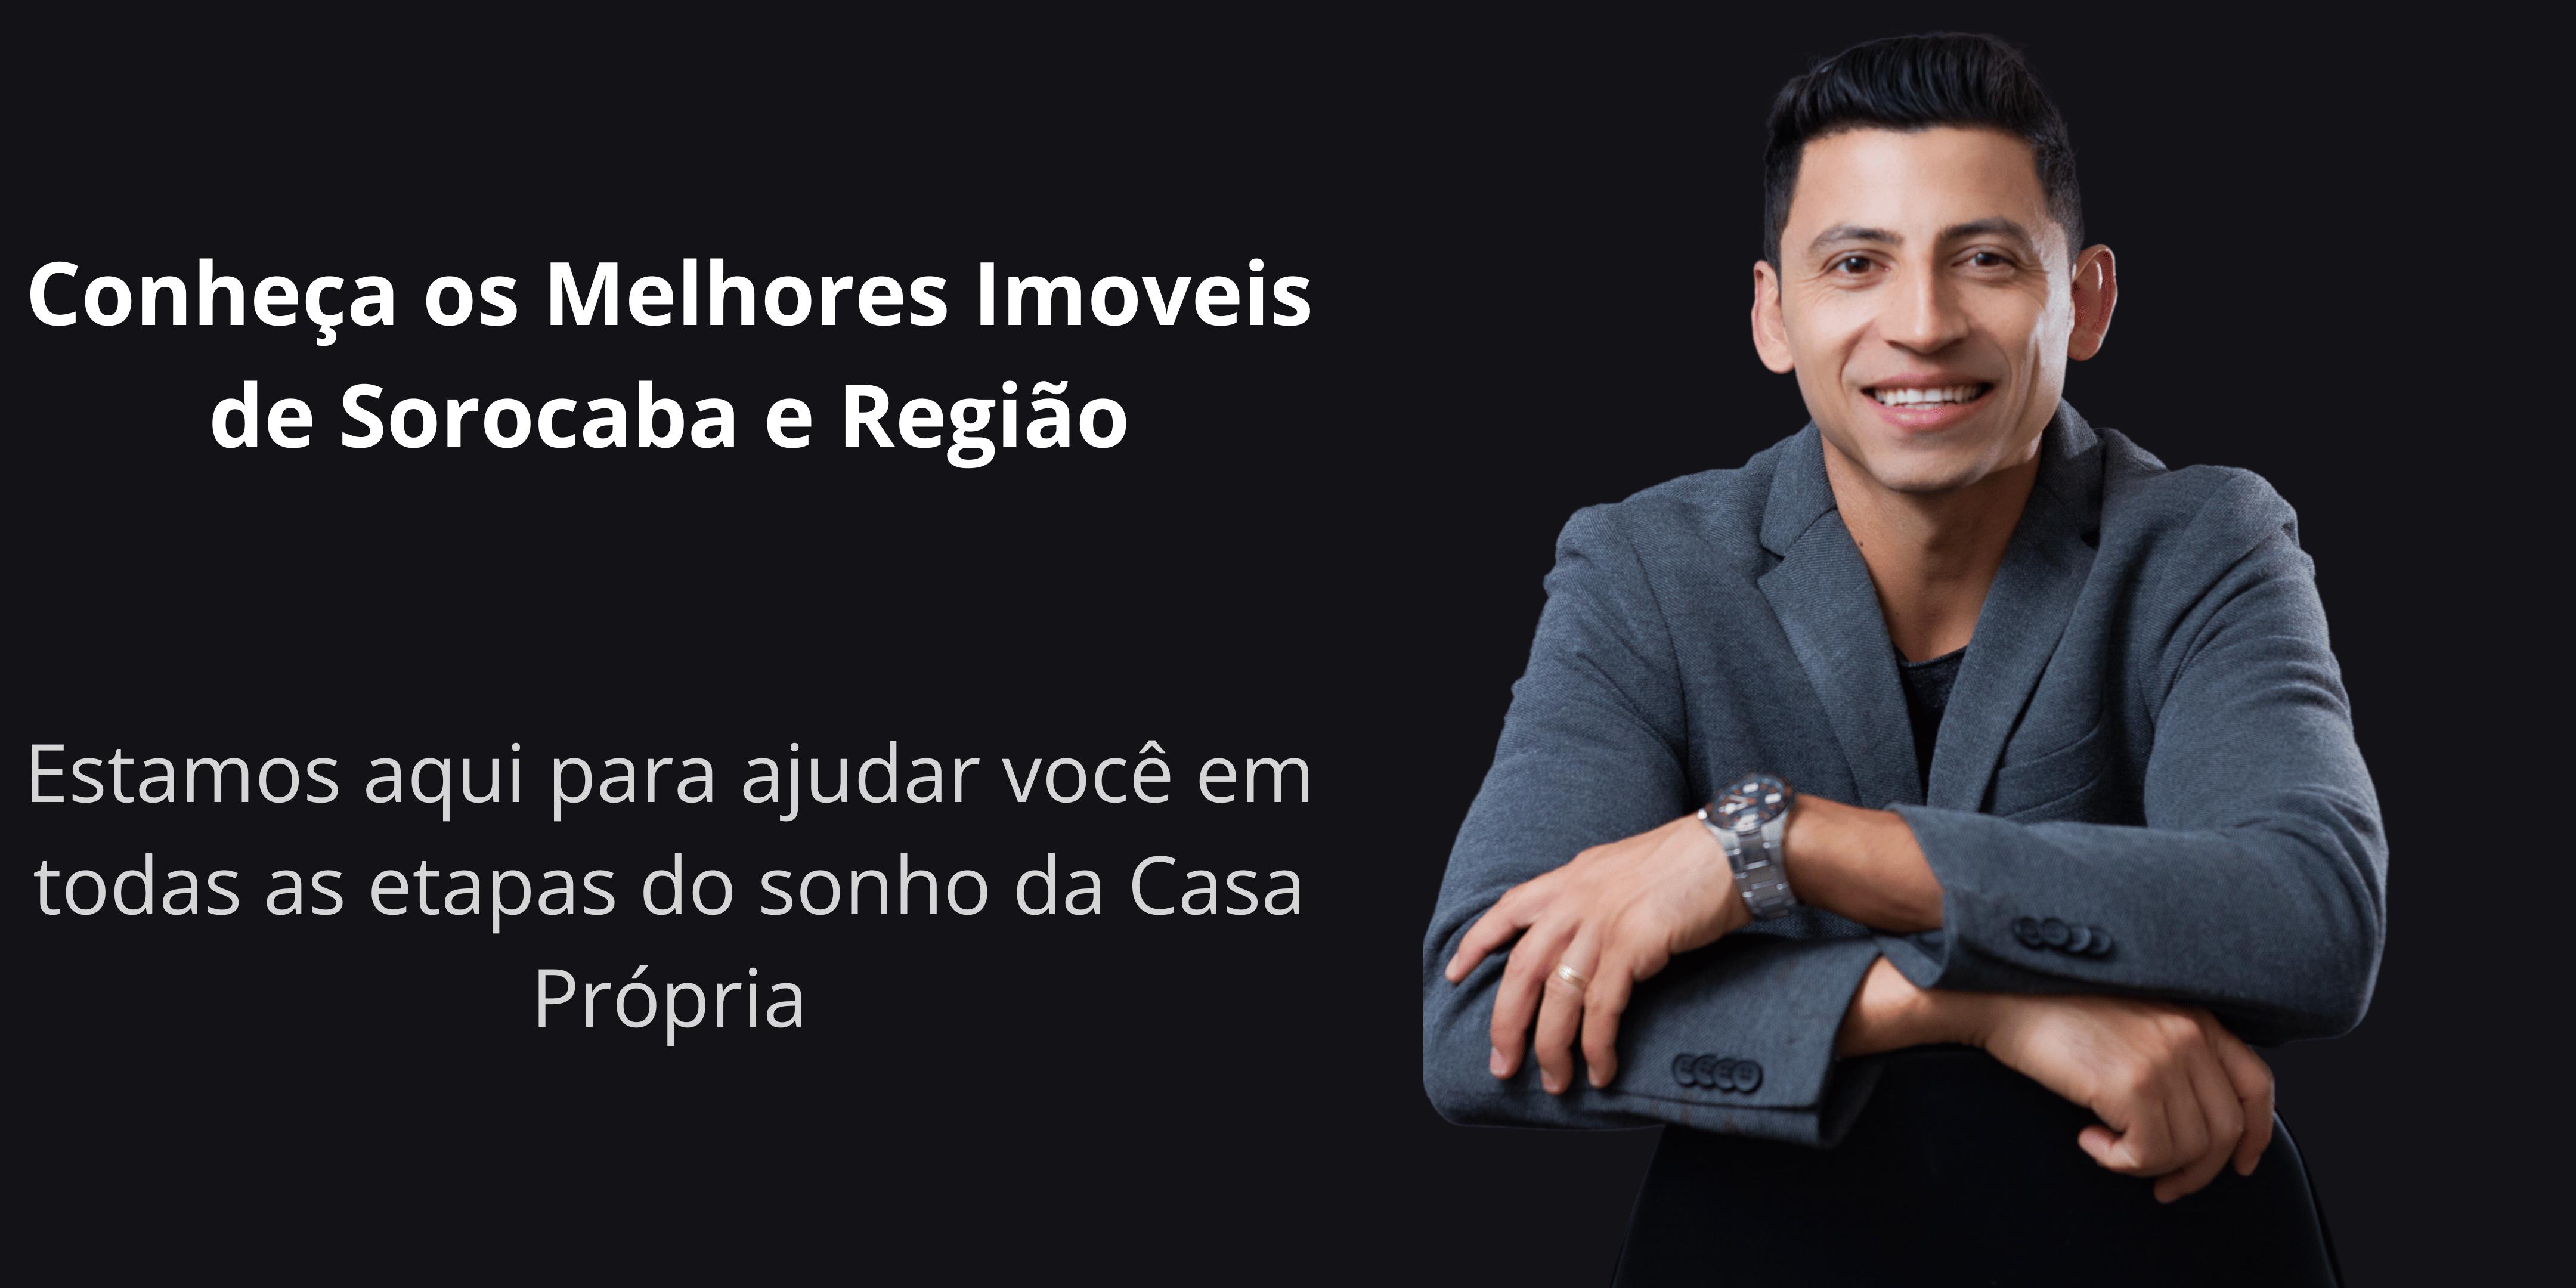 João Roque Imoveis (@ImoveisRoque) / X